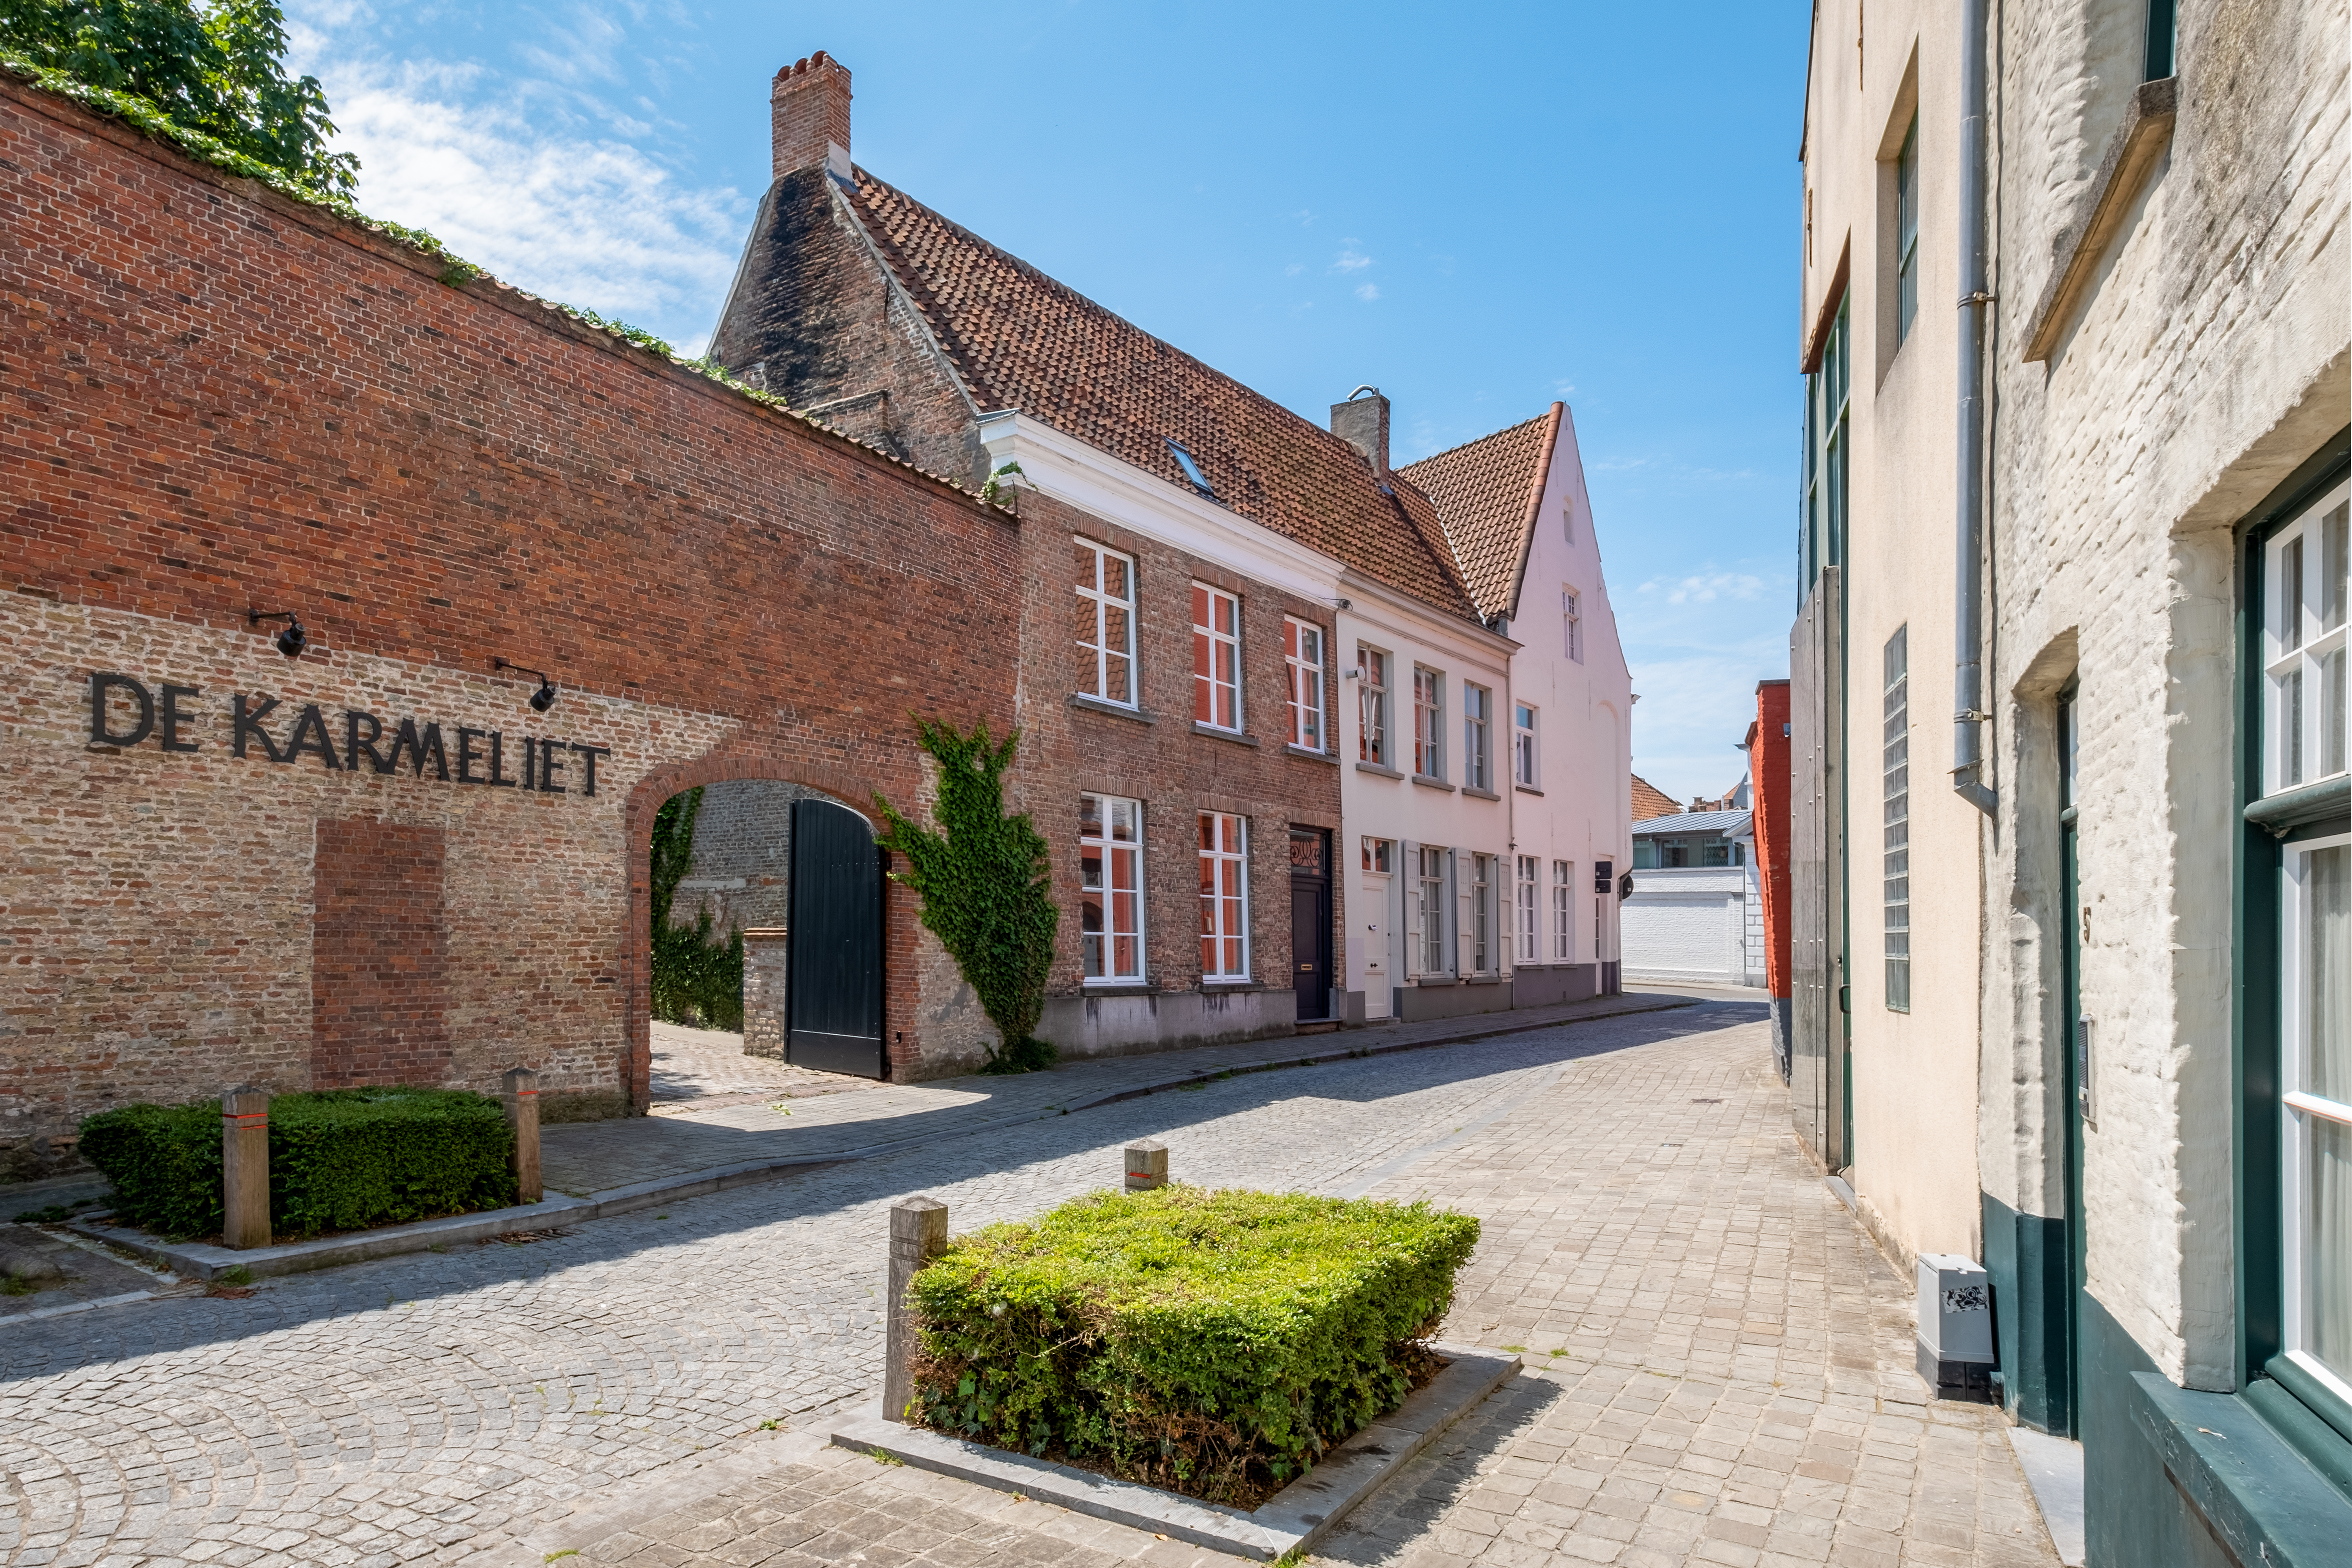 Het voormalige driesterrenrestaurant De Karmeliet in hartje Brugge